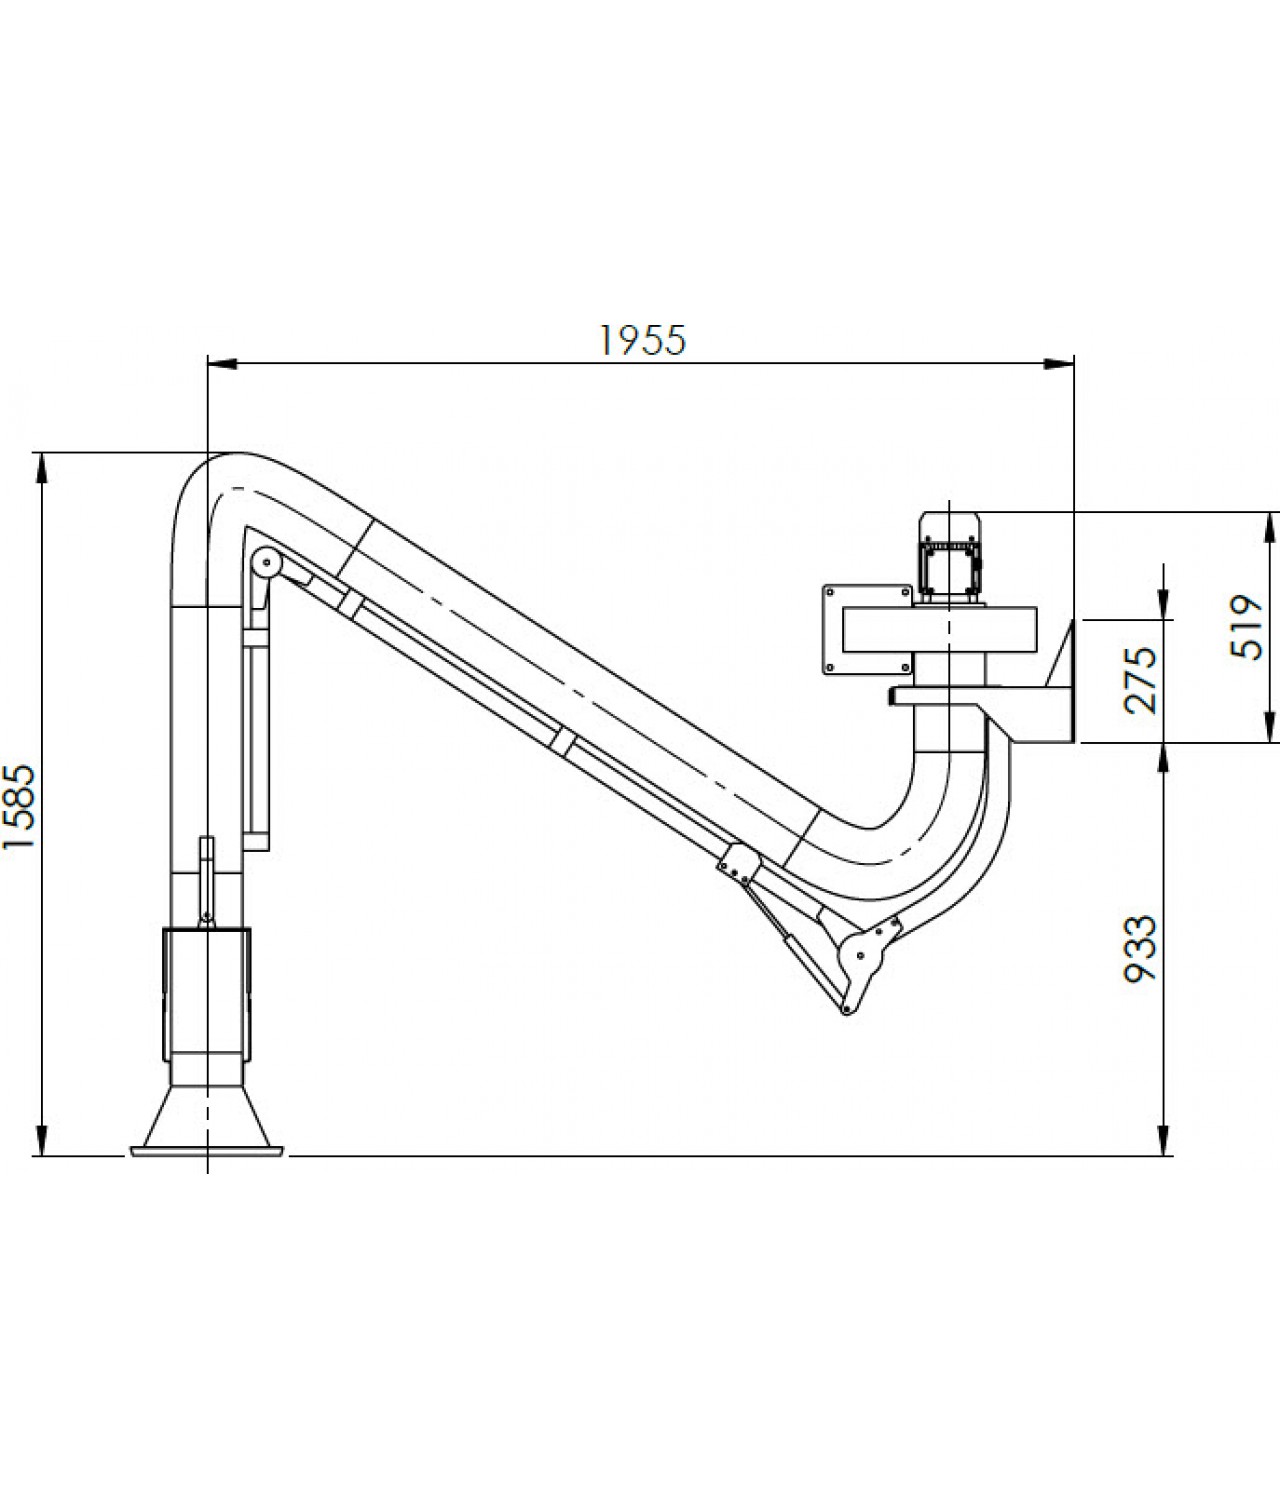 Suvirinimo dujų nutraukimo sistema SDNS-055 ≤1000 m³/h - brėžinys Nr.3